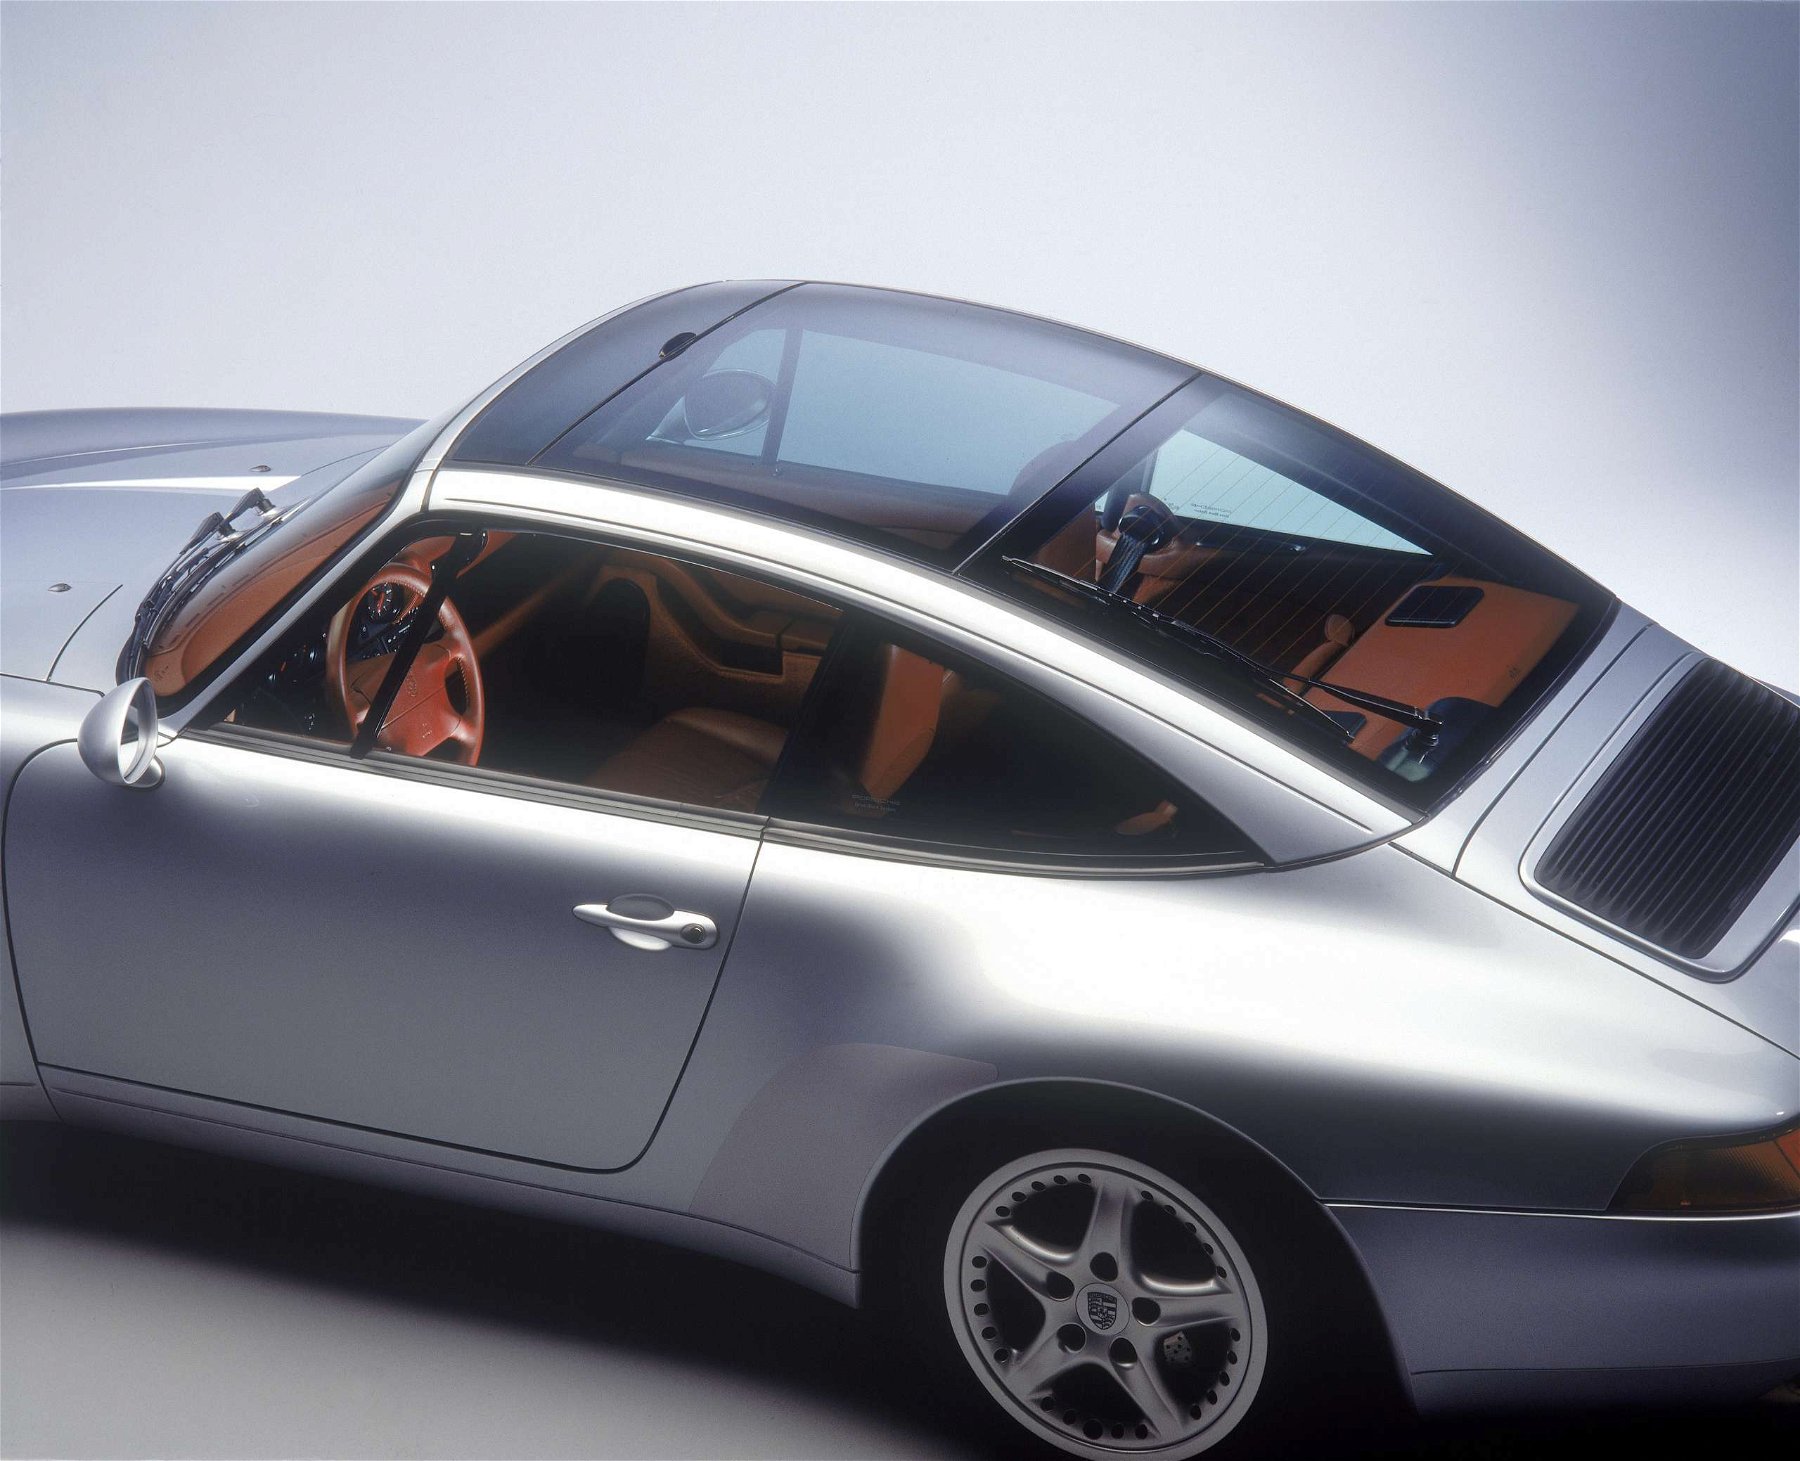 Porsche 993 portrait - Facts & Specifications -  - Magazine